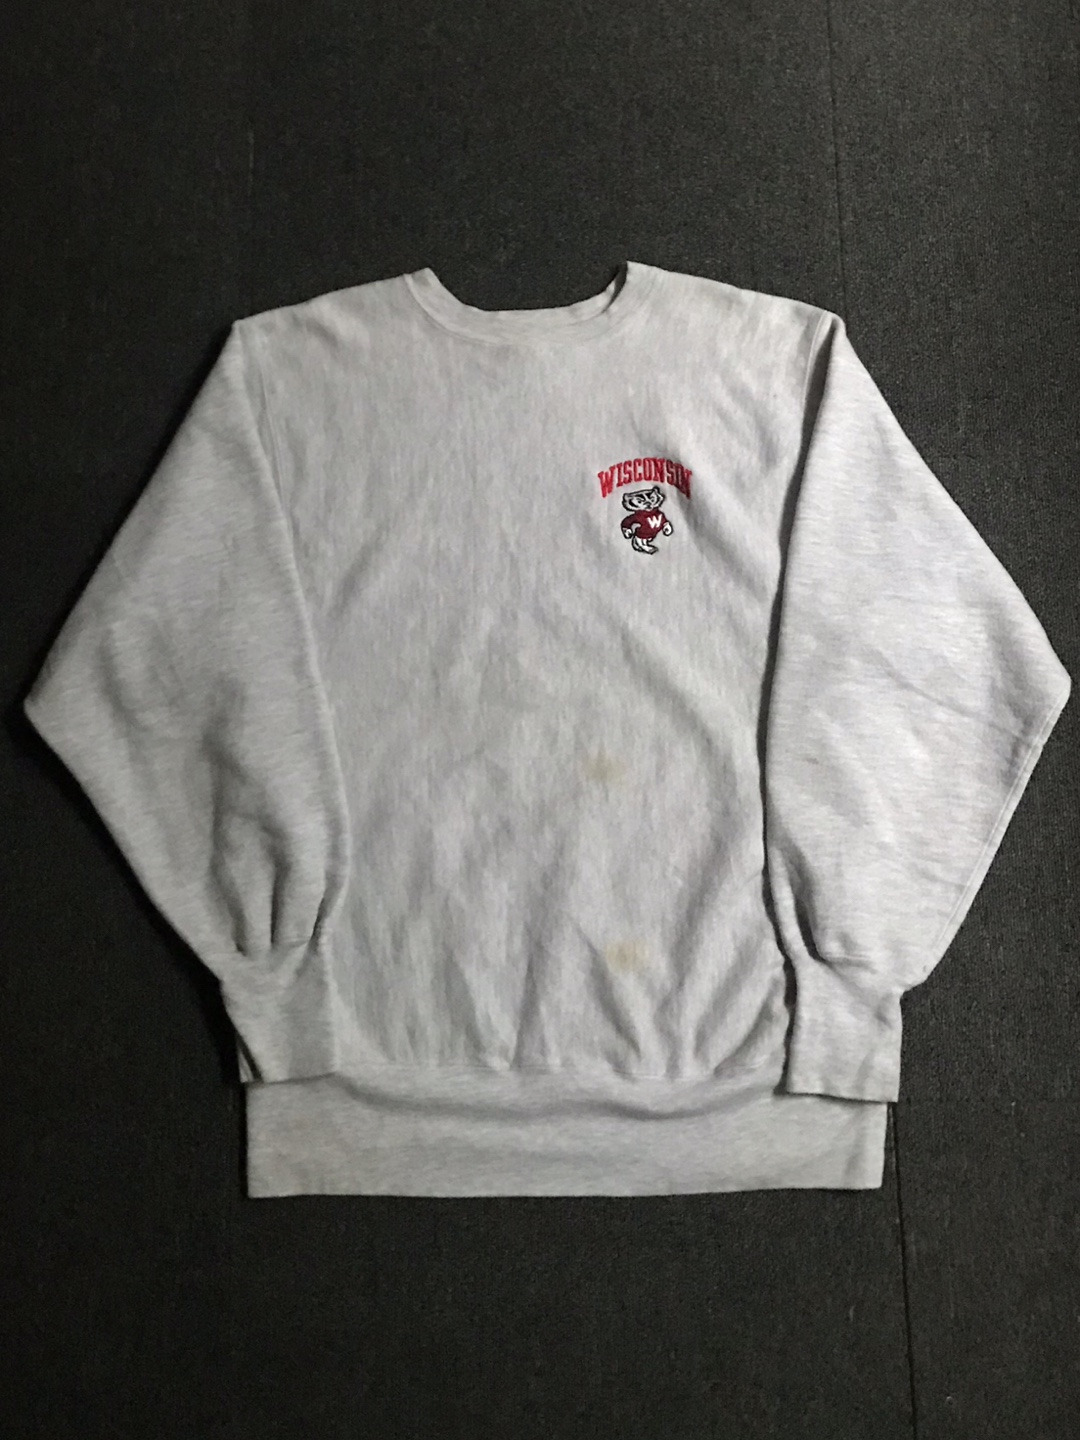 90s champion reverse weave sweatshirt USA made (L size,